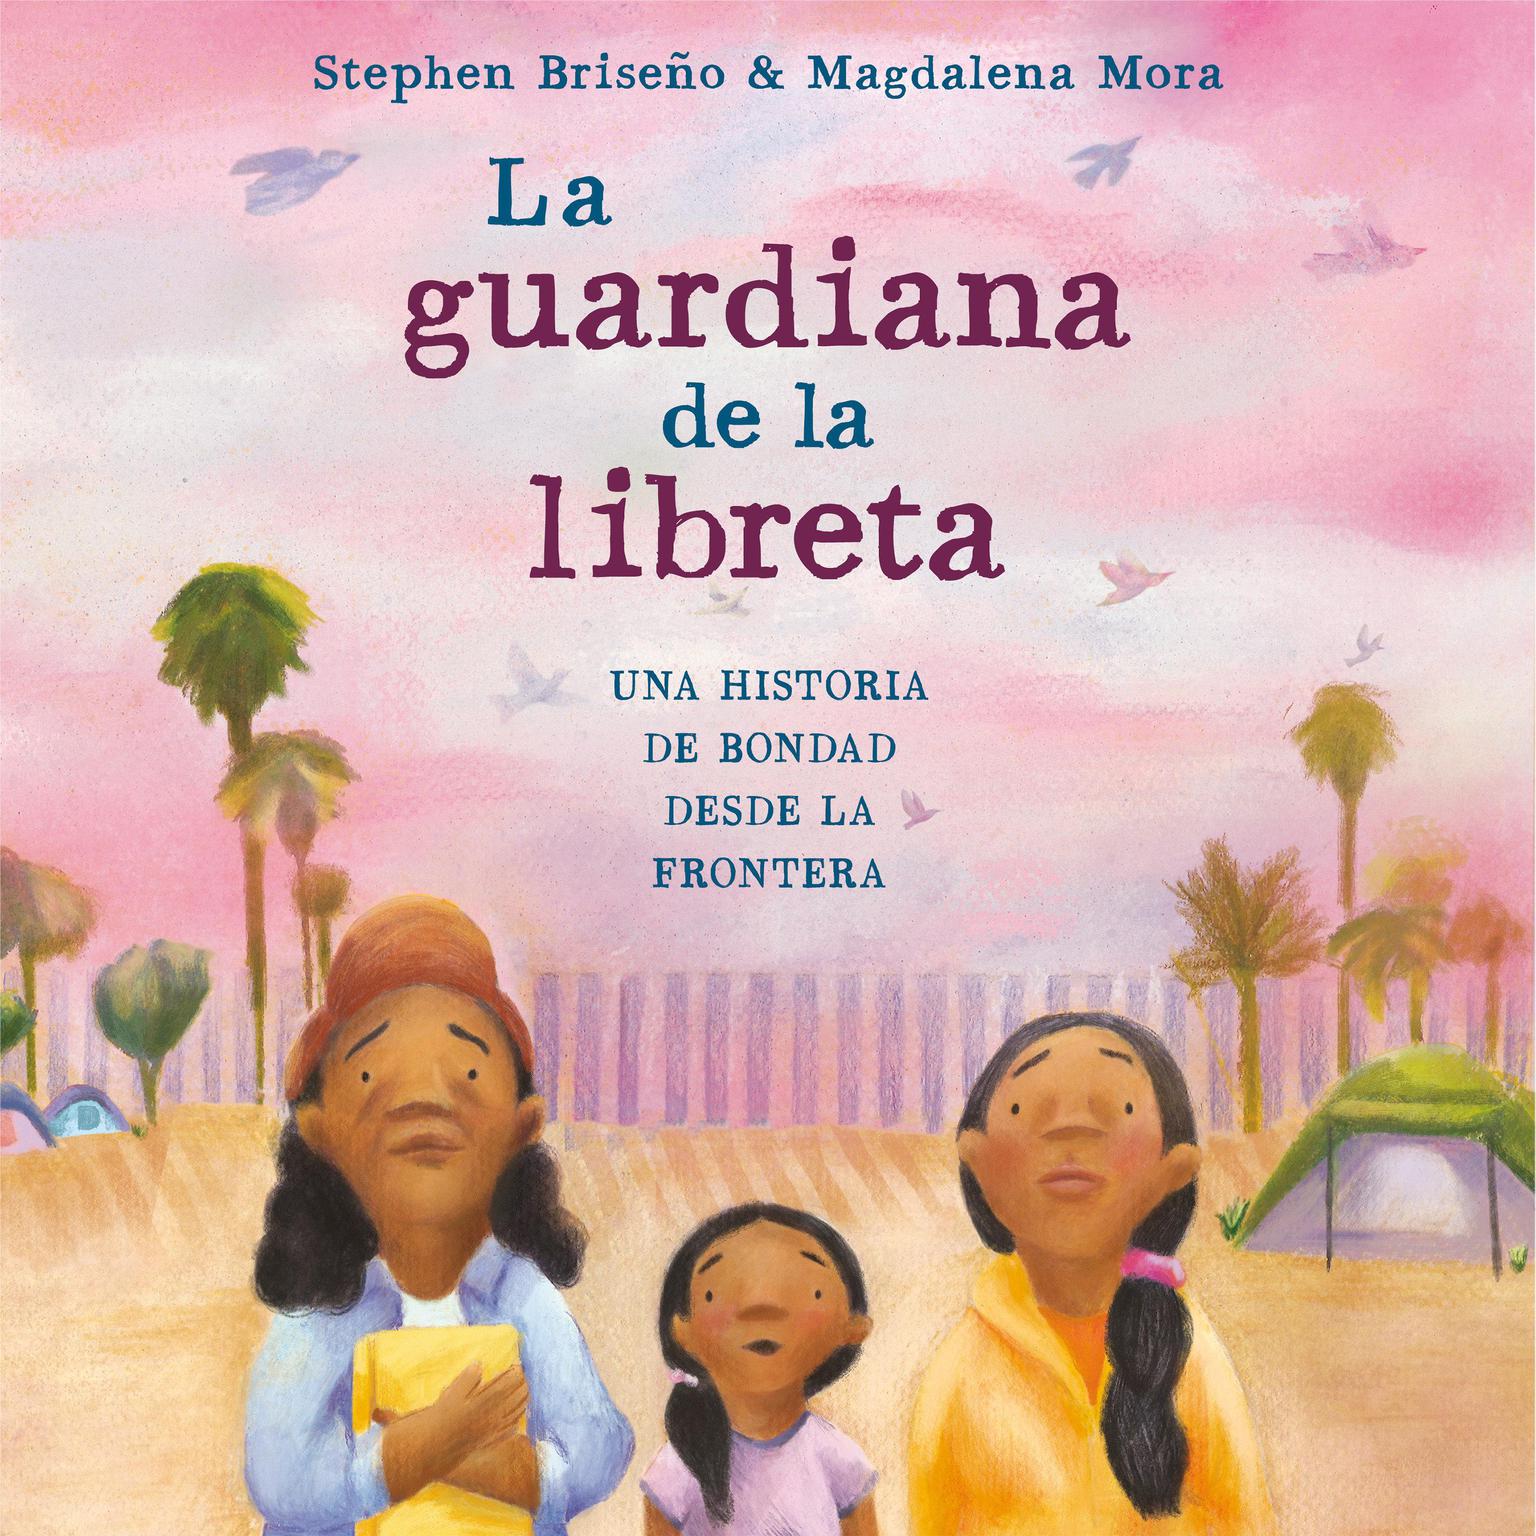 La guardiana de la libreta: Una historia de bondad desde la frontera Audiobook, by Stephen Briseño